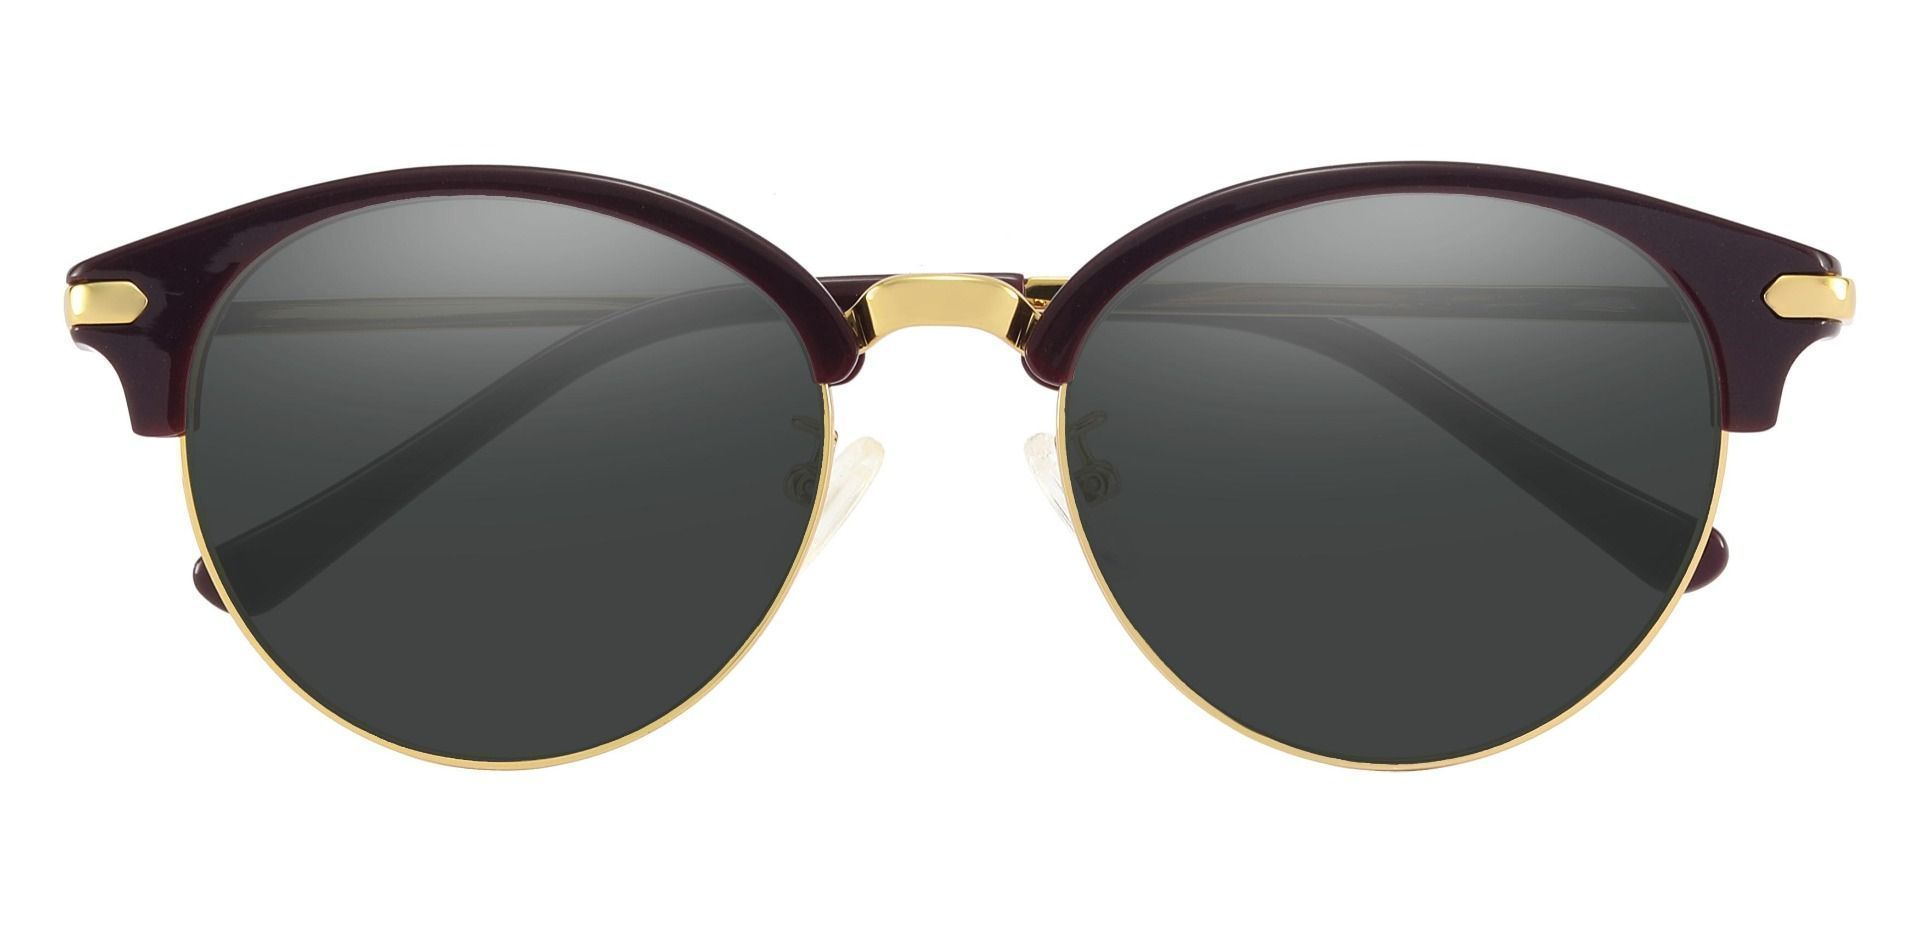 Catskill Browline Prescription Sunglasses - Purple Frame With Gray Lenses